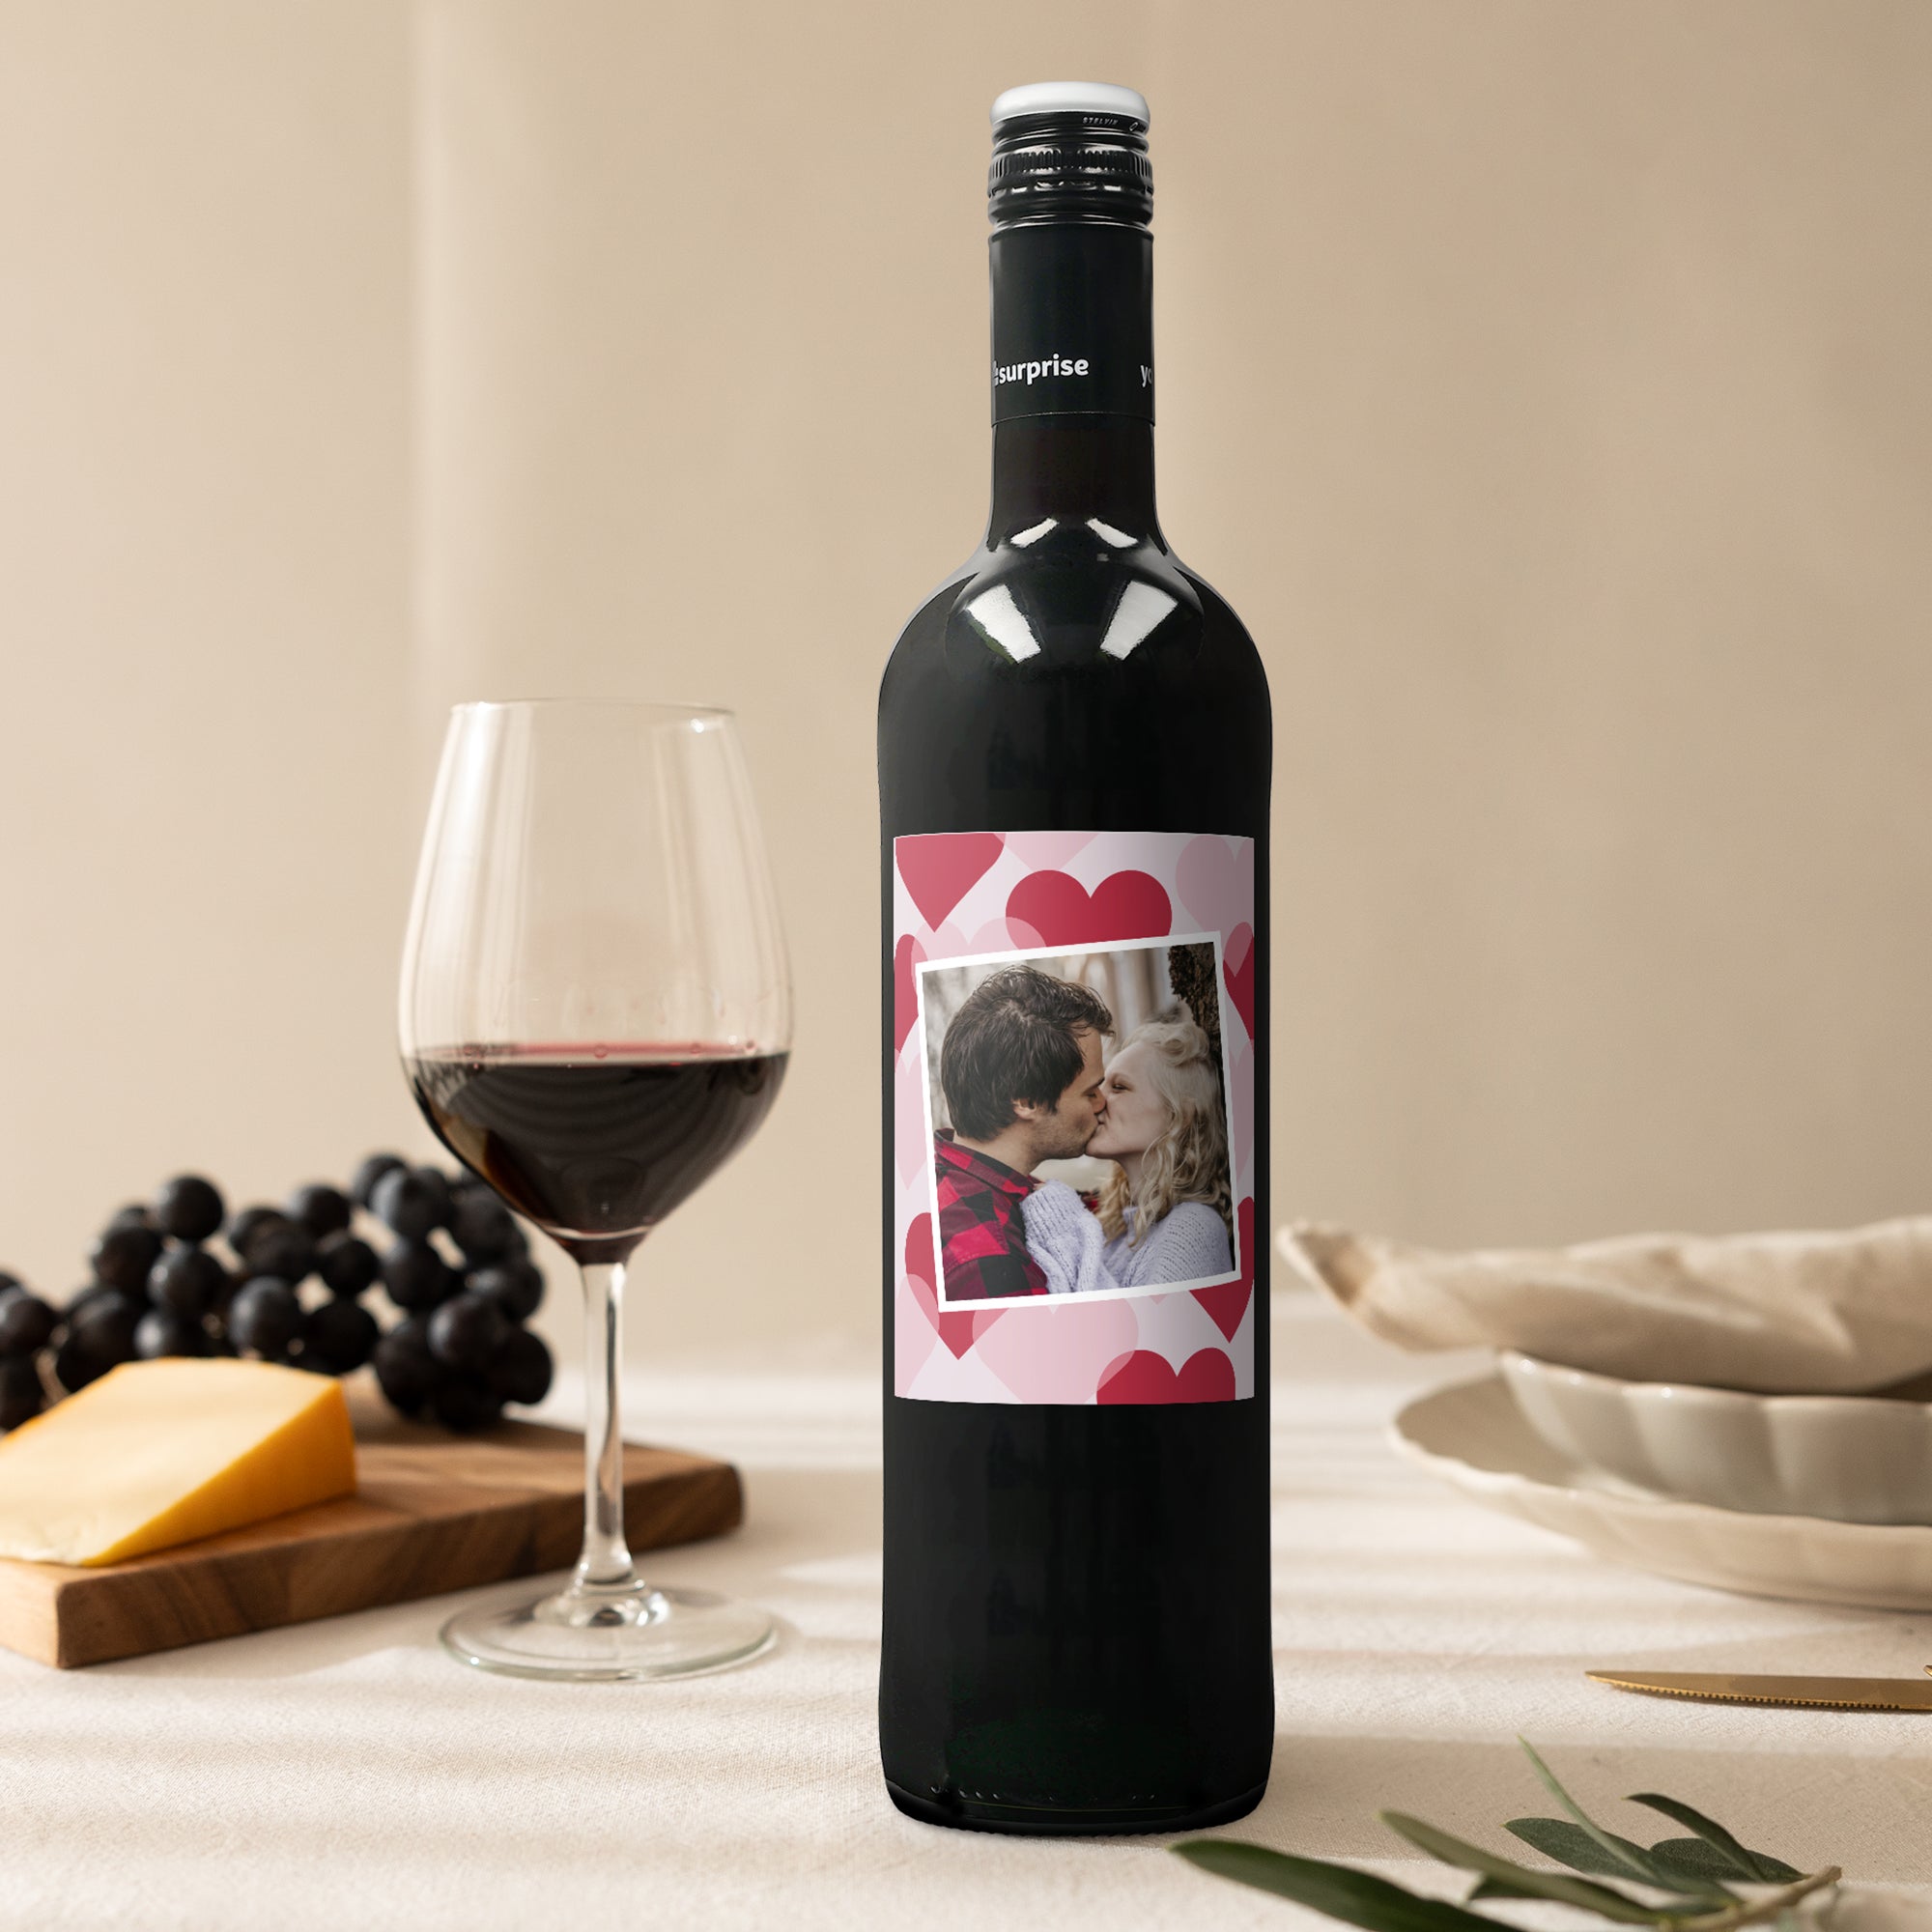 Wine with personalised label - Maison de la Surprise - Merlot